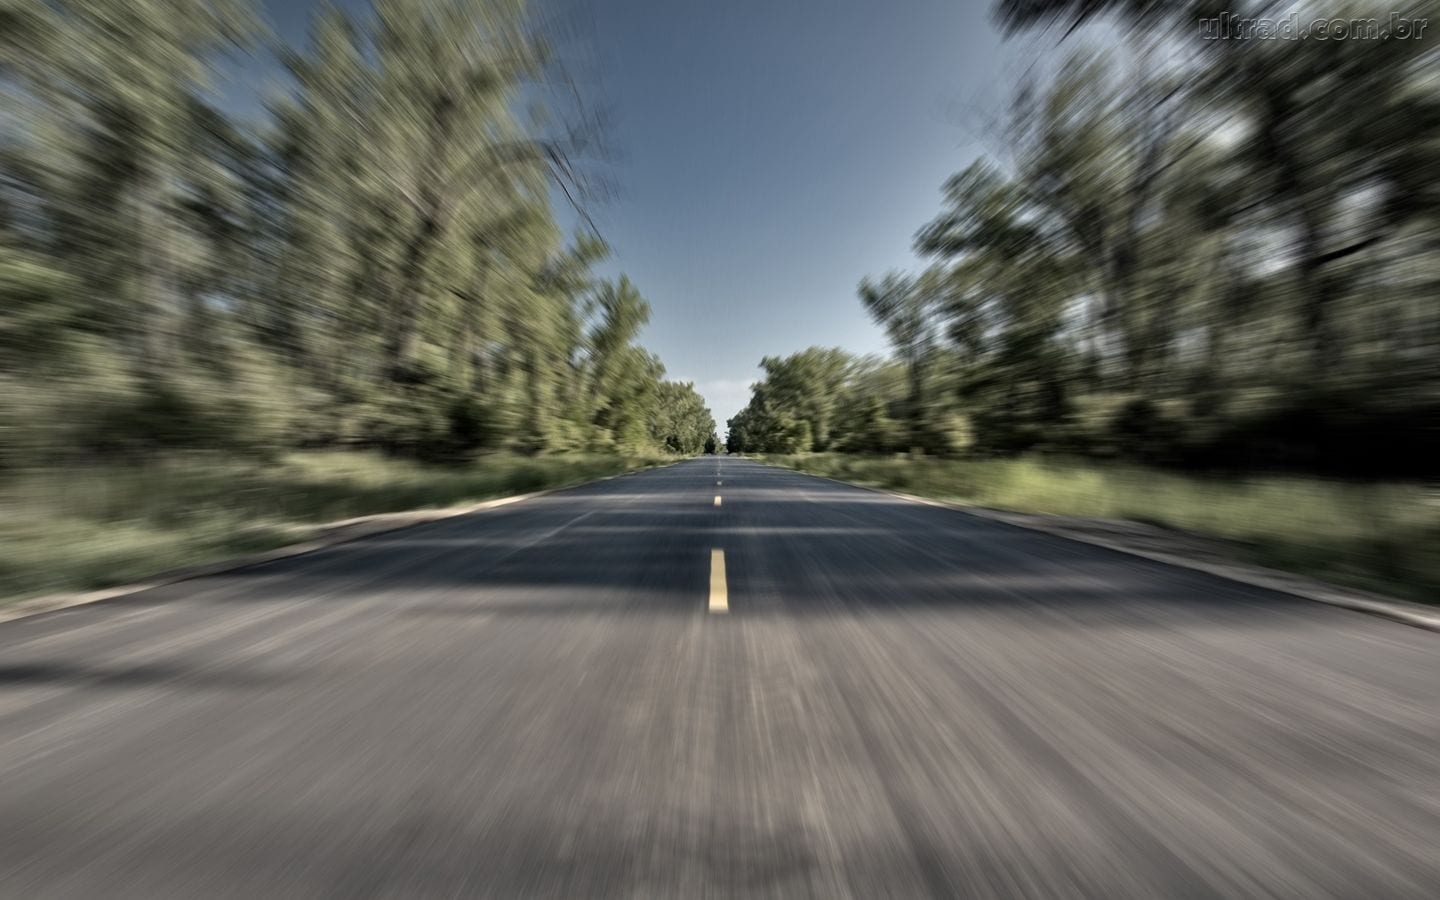 Hipnose na estrada: abra os olhos e saiba como combater